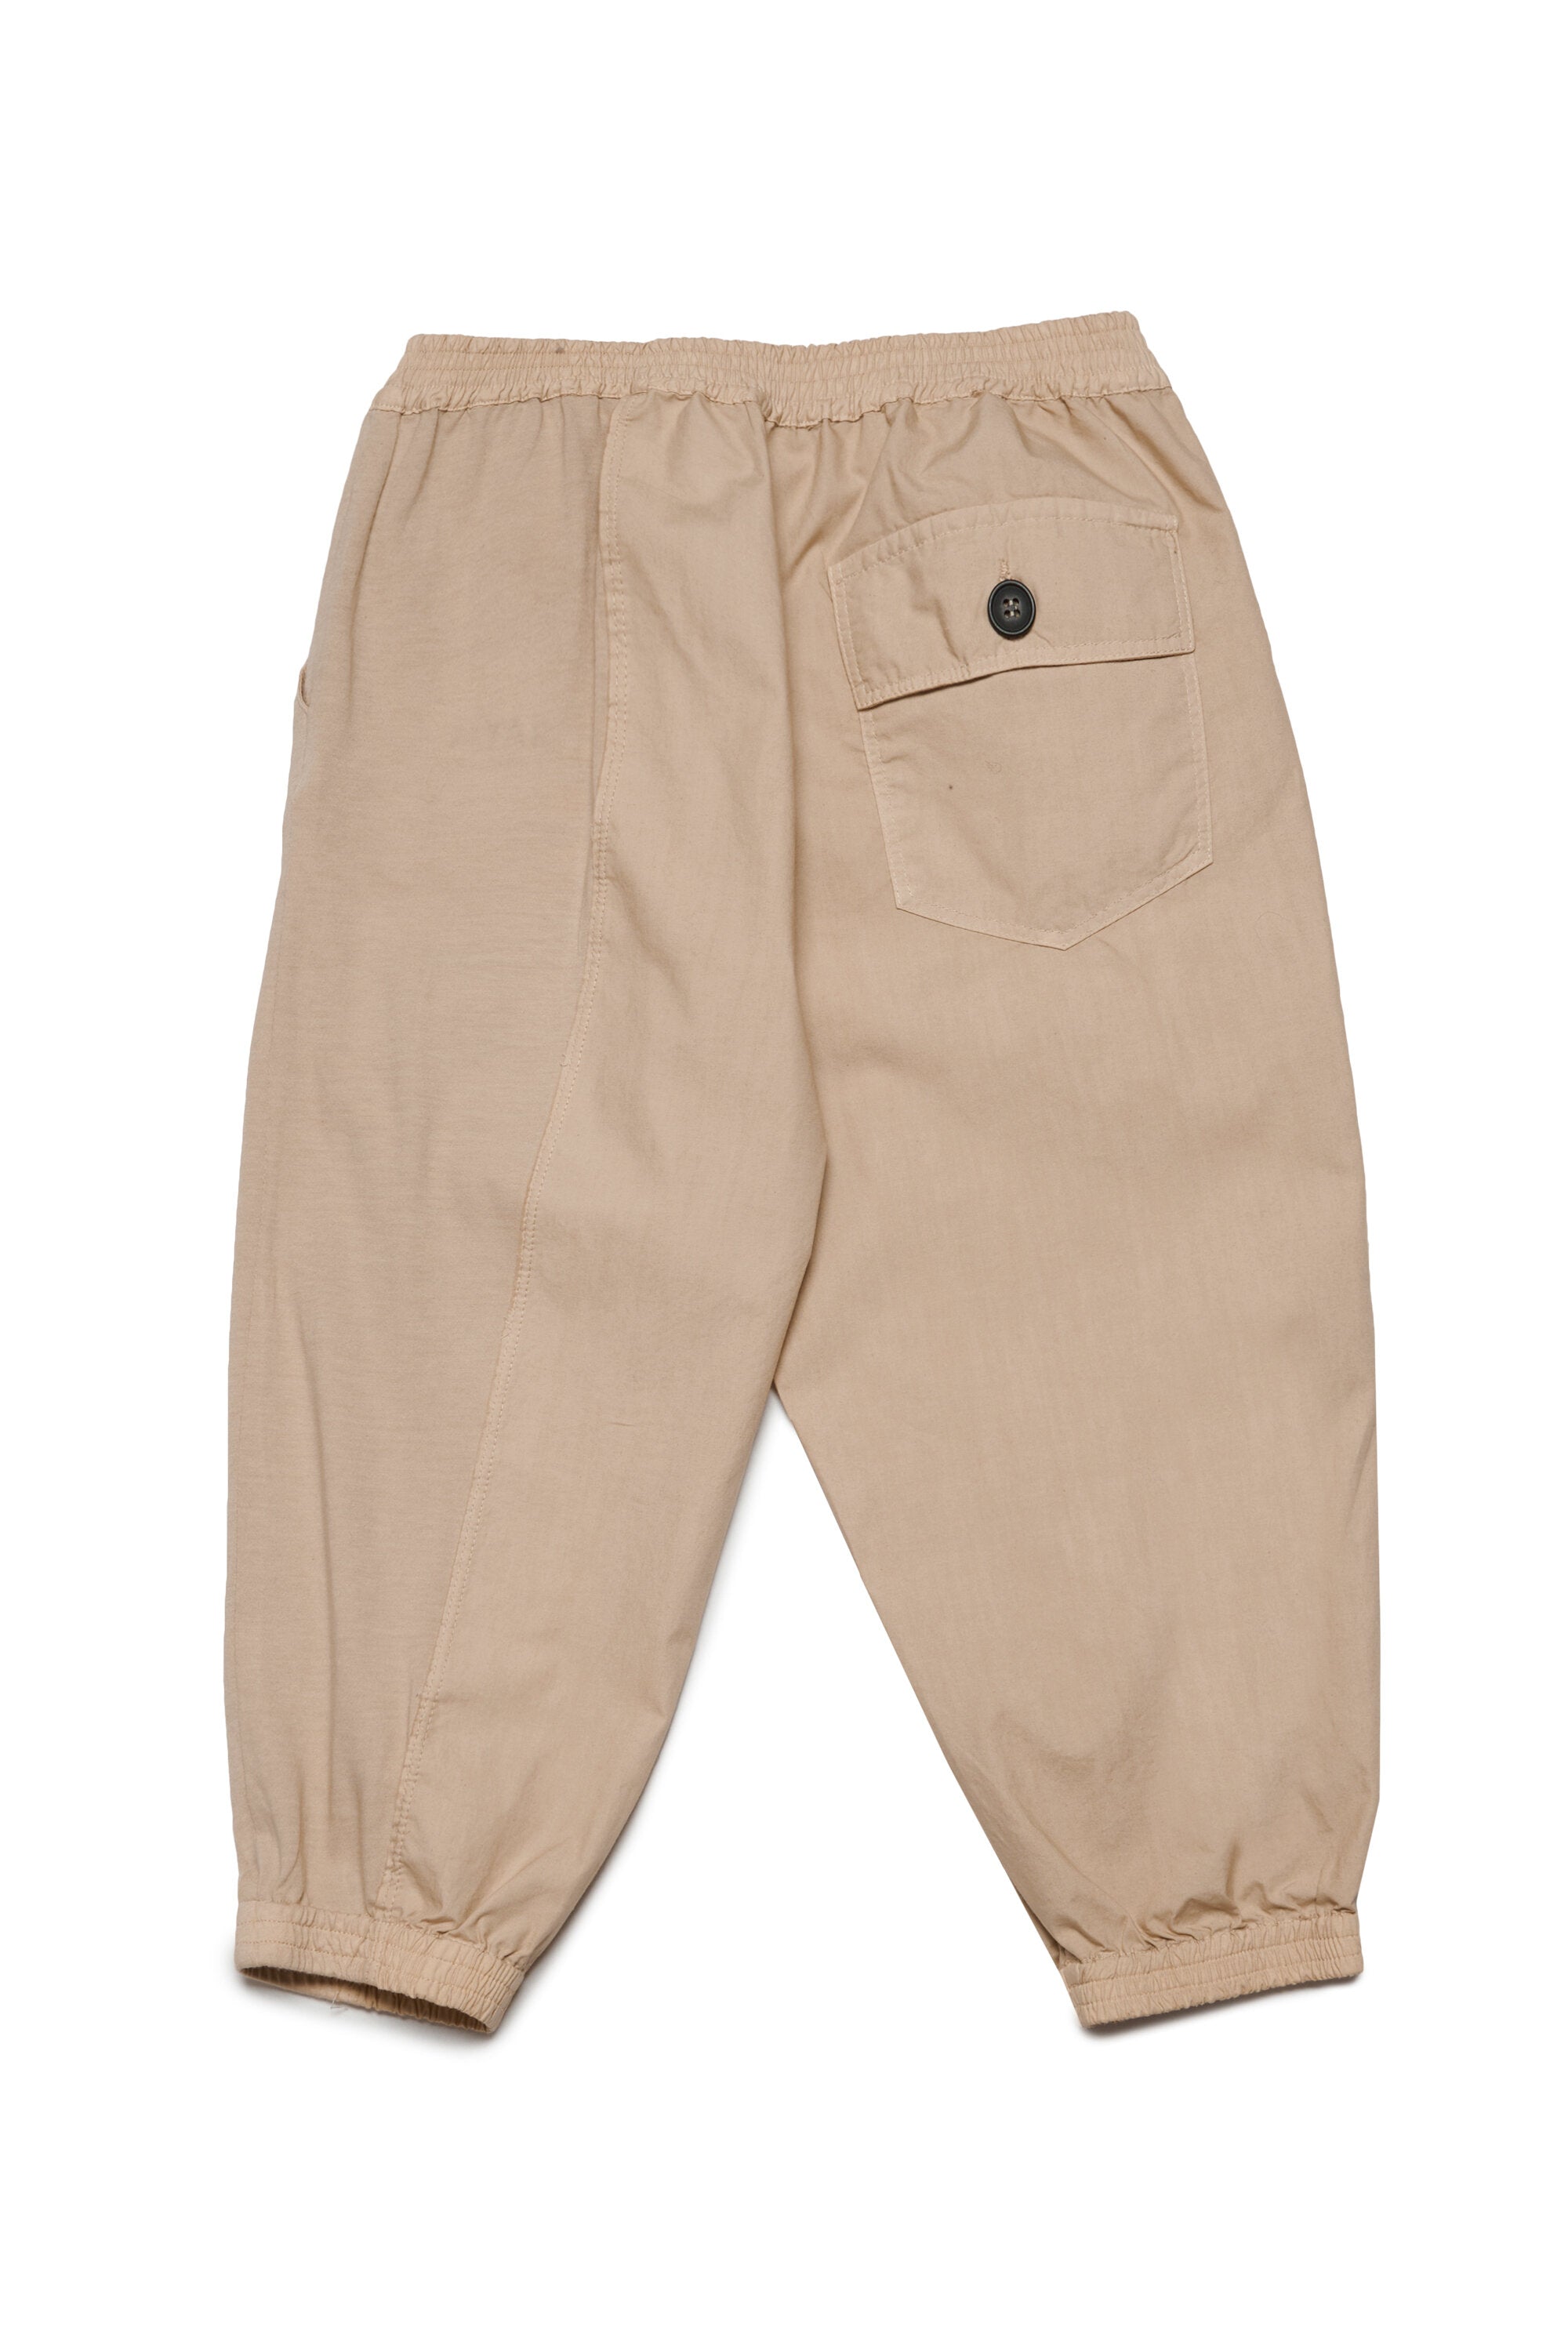 Pantalones en tejido deadstock con logotipo MYAR